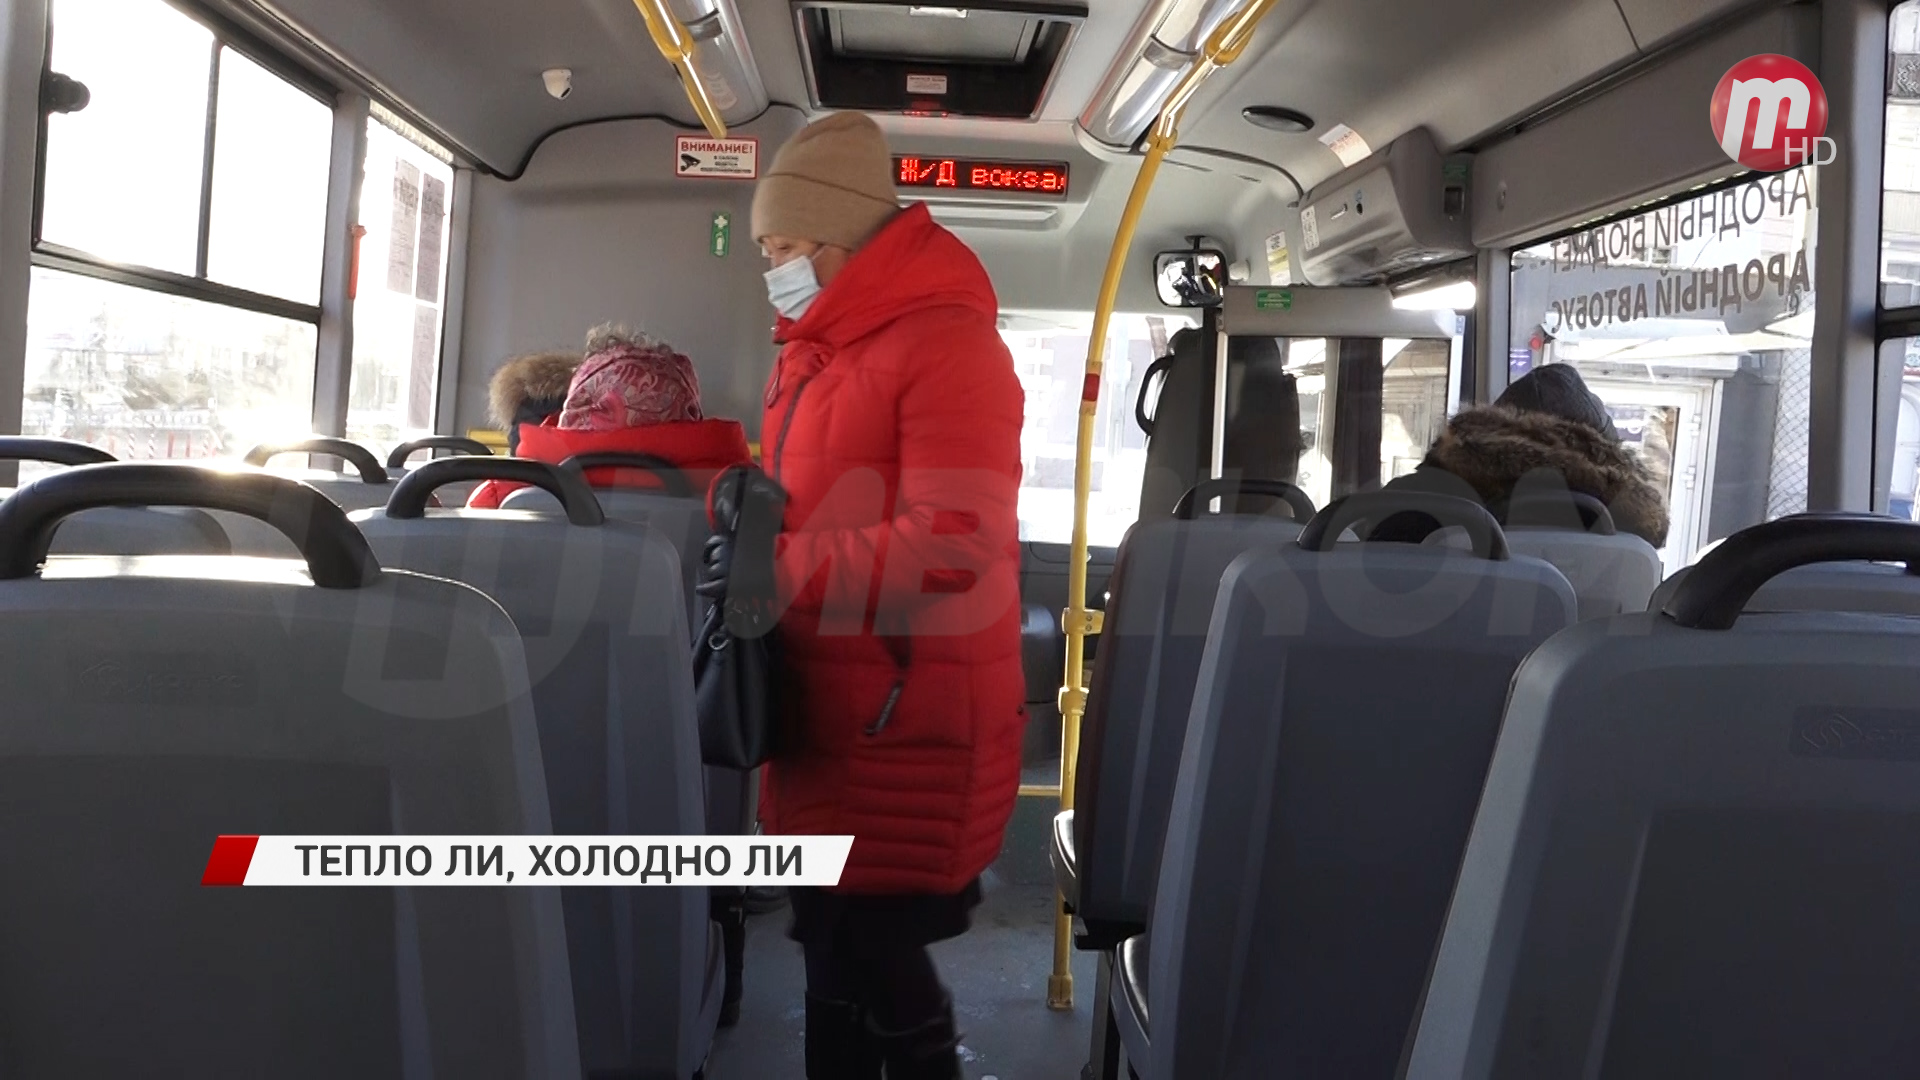 Горожане жалуются в соцсетях на то, что пассажиры мерзнут в салонах новых 42 городских автобусах ПАЗ